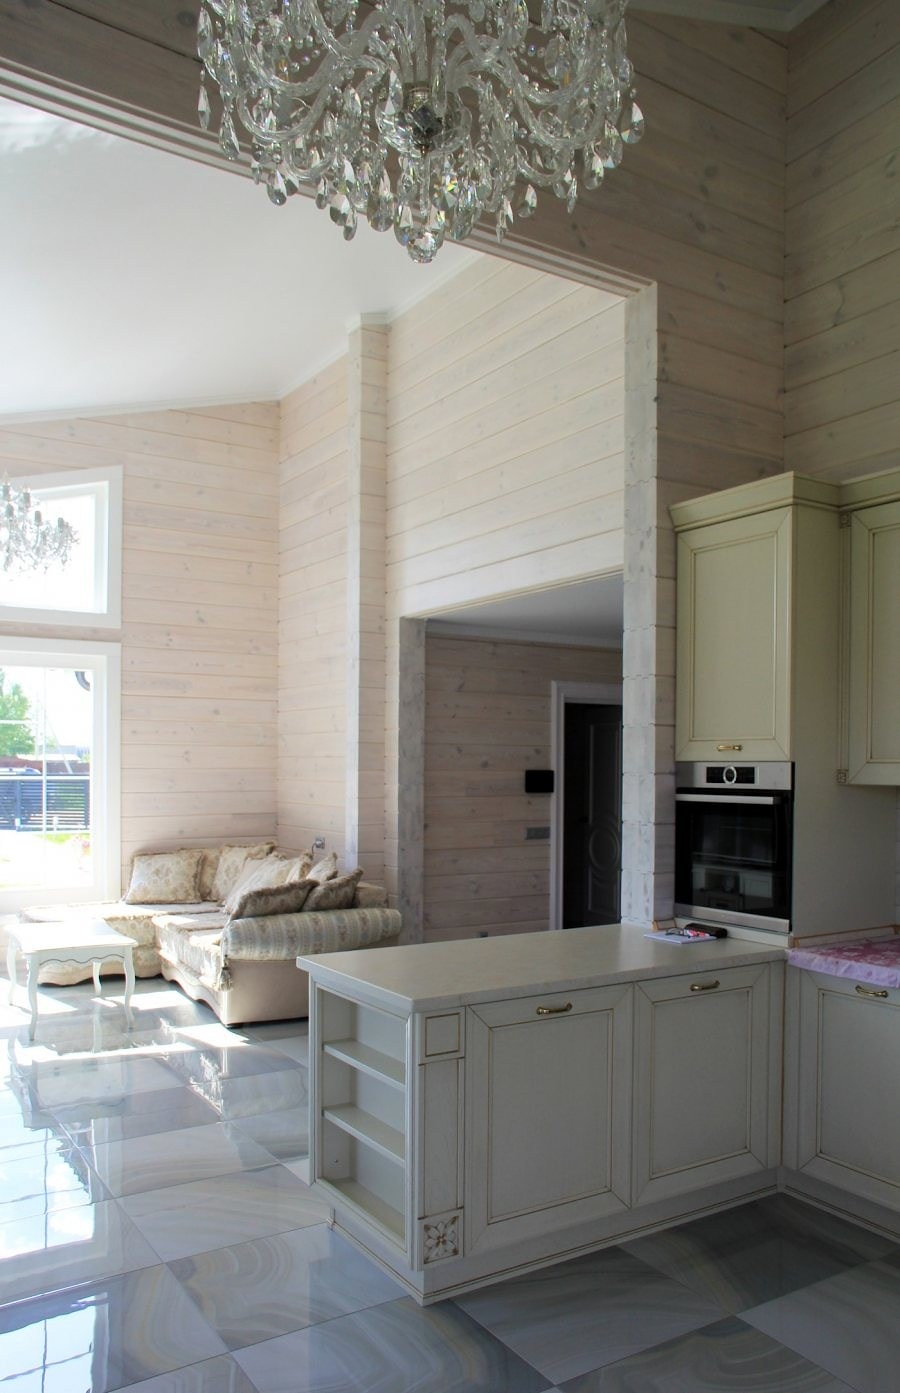 Casa in legno lamellare in stile classico 130 m2